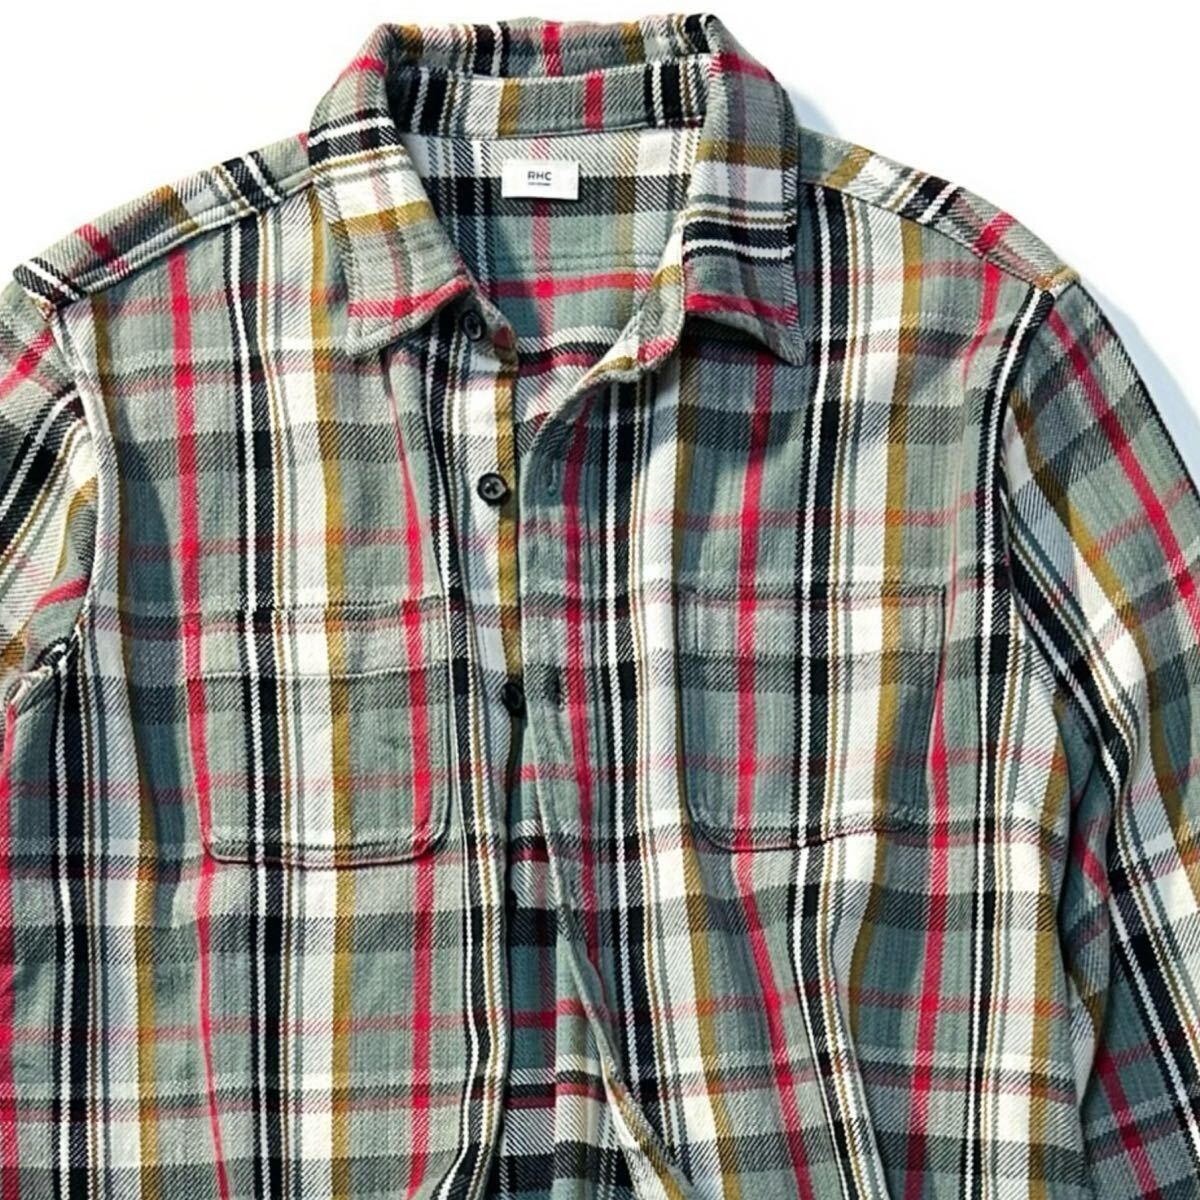 【Ron Herman】PickUp掲載◎!!RHC ロンハーマン 定価3.2万 Heavy Twill Shirts ヘビーツイルチェックシャツ コットンツイル ワークシャツの画像3